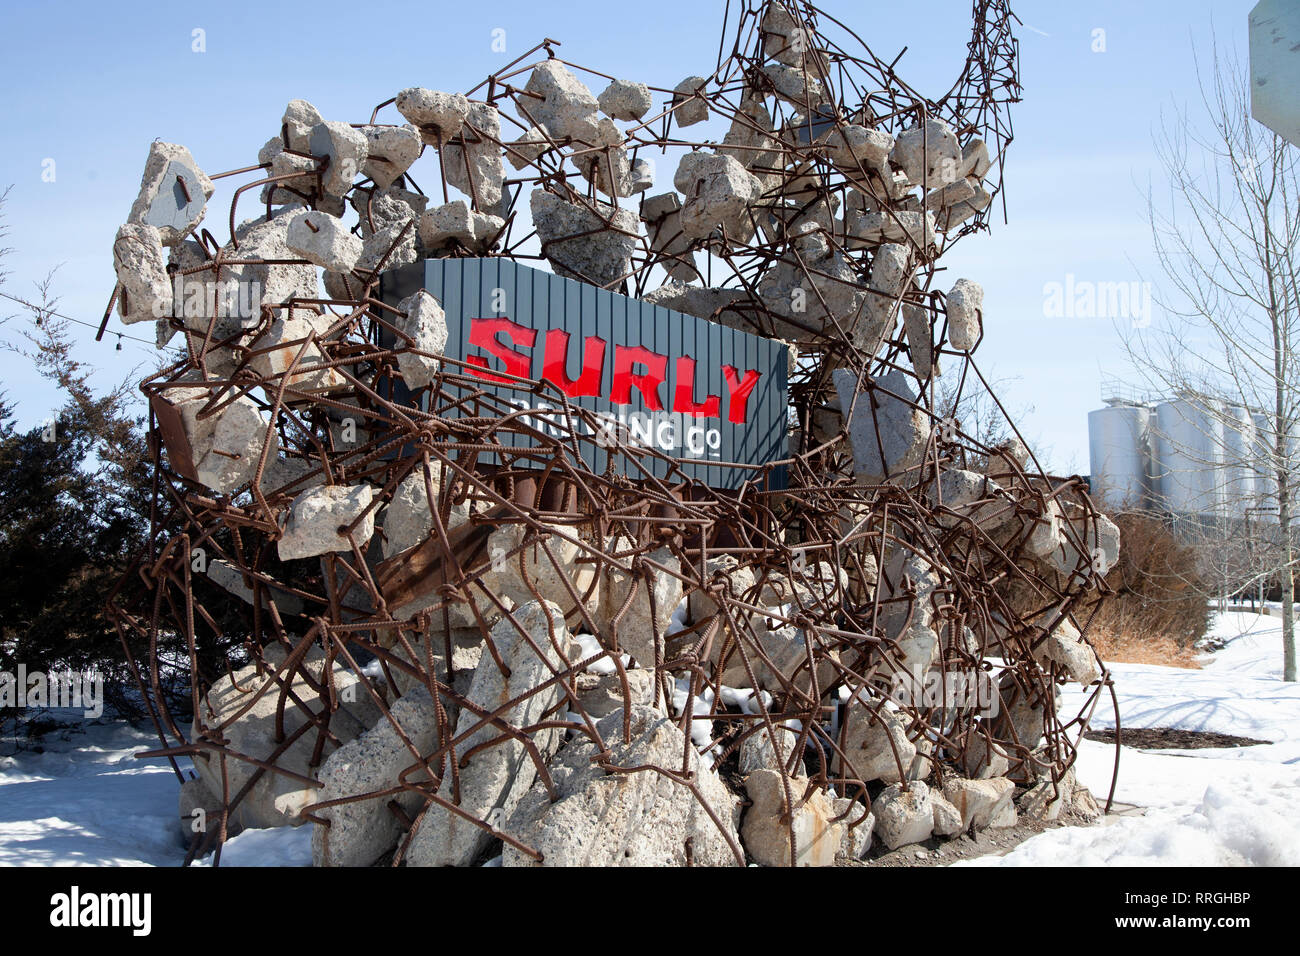 Sculpture faite de débris de construction en face de l'immeuble de bureaux bourru Brewing Co. holding leur plaque signalétique. Minneapolis Minnesota MN USA Banque D'Images